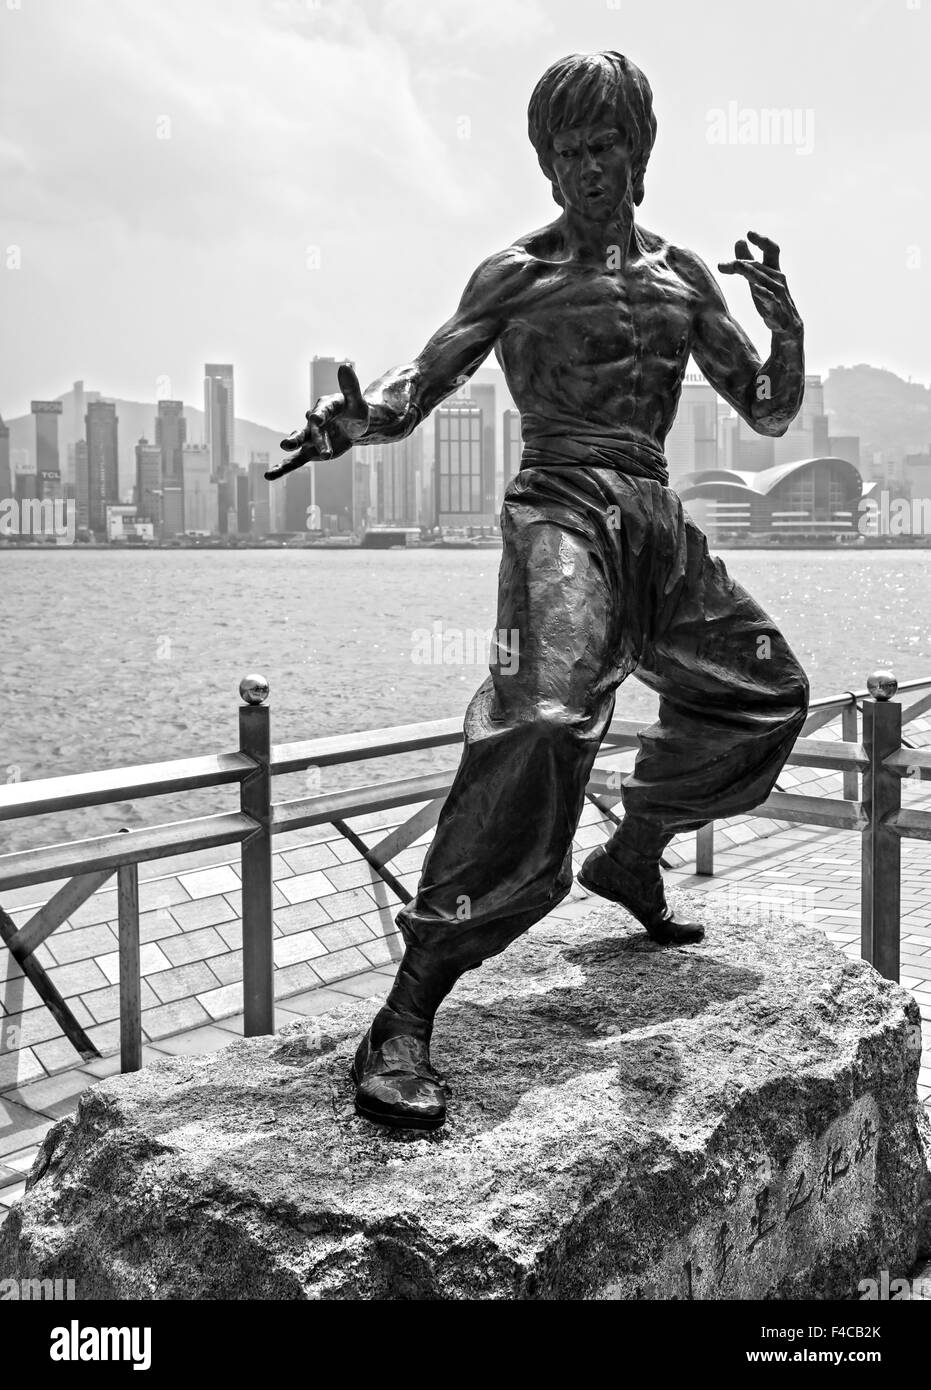 HONG KONG - 15 März: Bruce Lee-Statue auf der Avenue of Stars am 15. März 2013 in Tsim Sha Tsui, Hongkong. Die Statue ist eine o Stockfoto